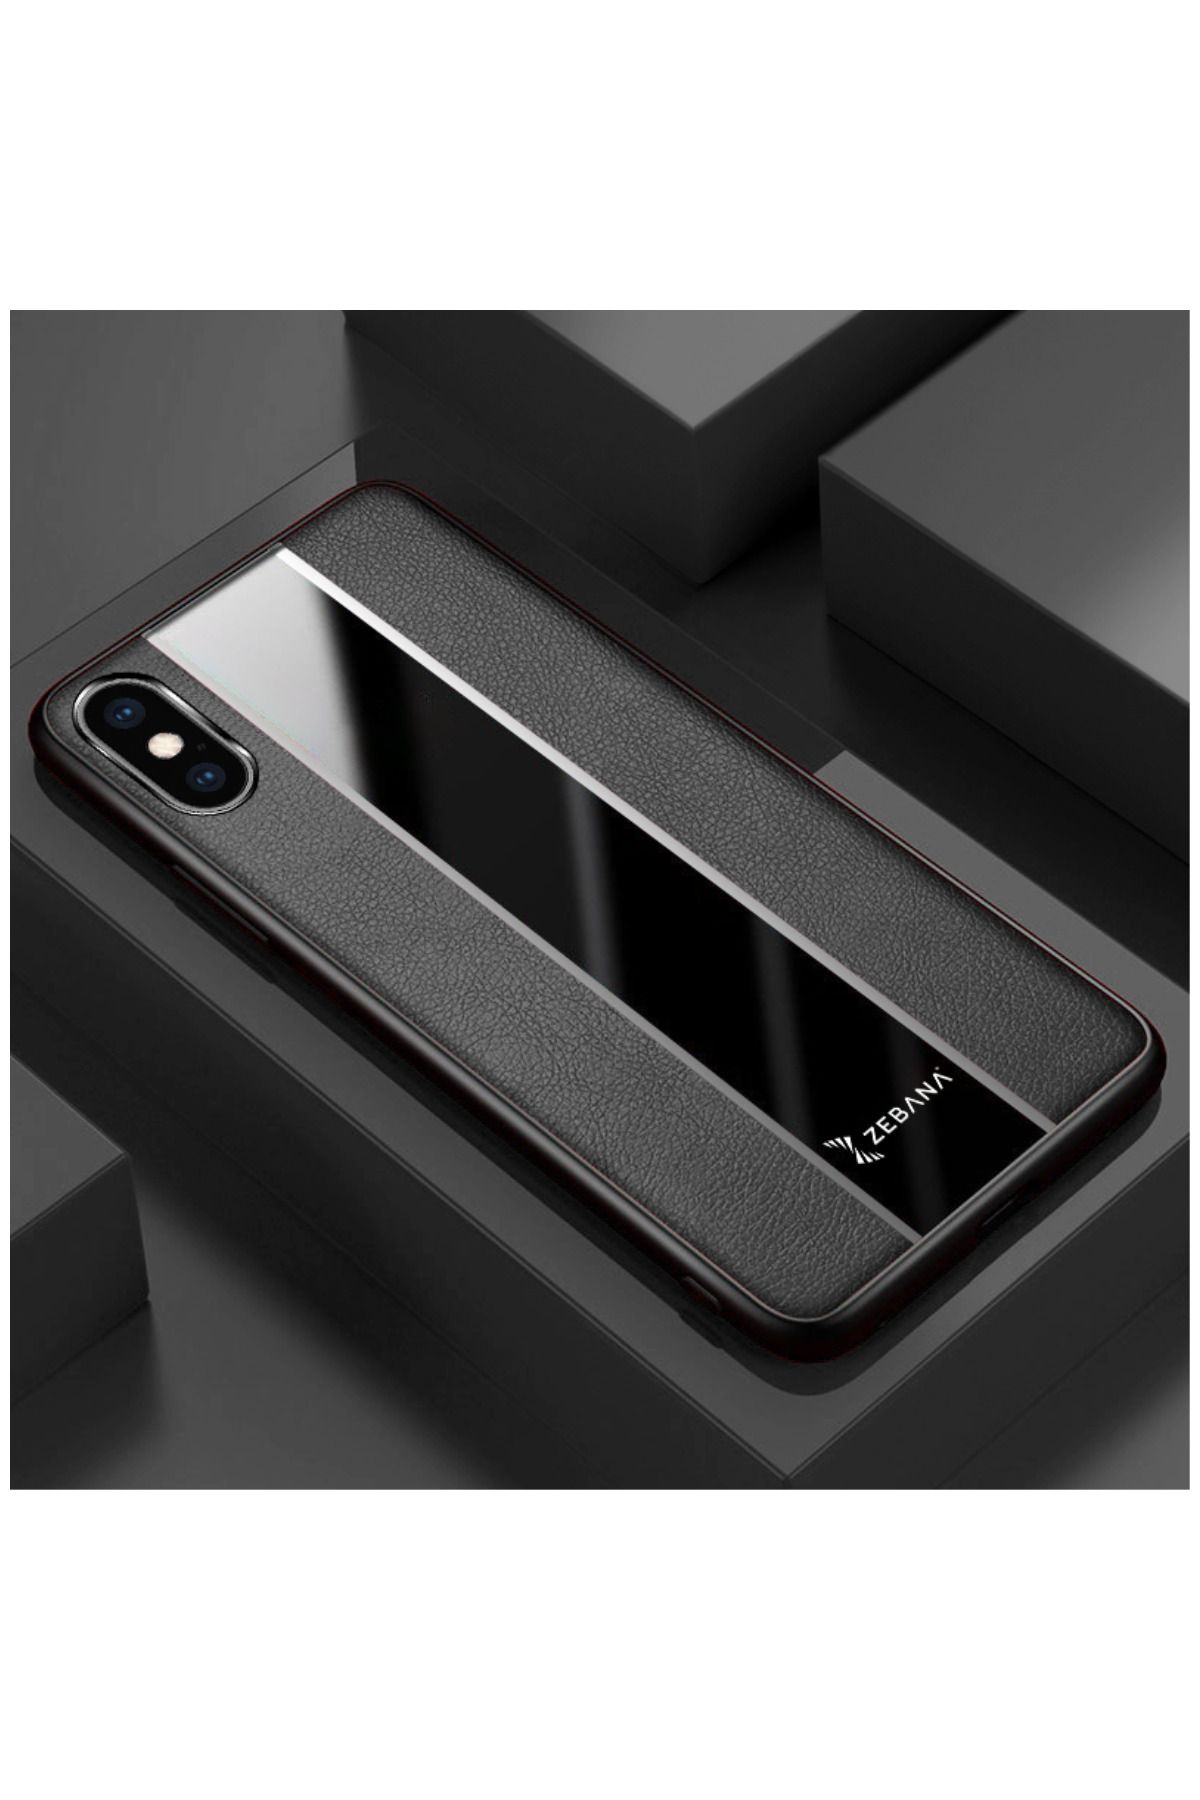 Dara Aksesuar Apple Iphone Xs Max Uyumlu Kılıf Zebana Premium Deri Kılıf Siyah